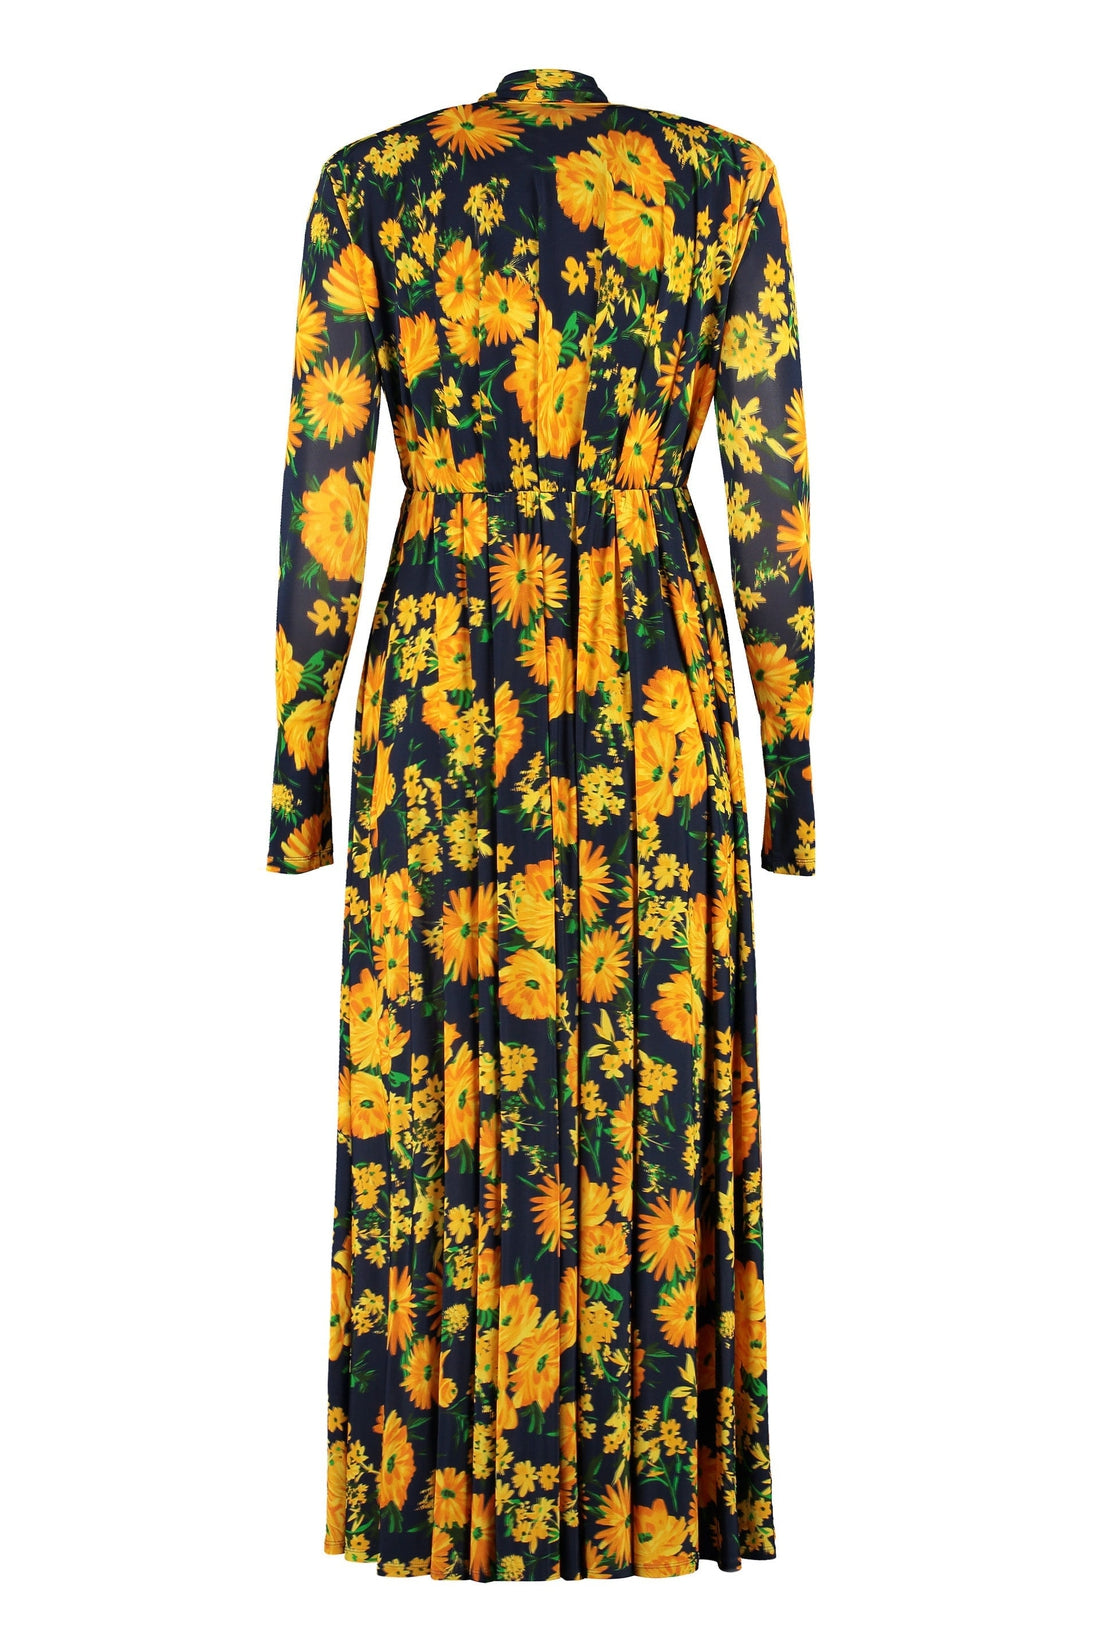 Balenciaga-OUTLET-SALE-Floral print long dress-ARCHIVIST